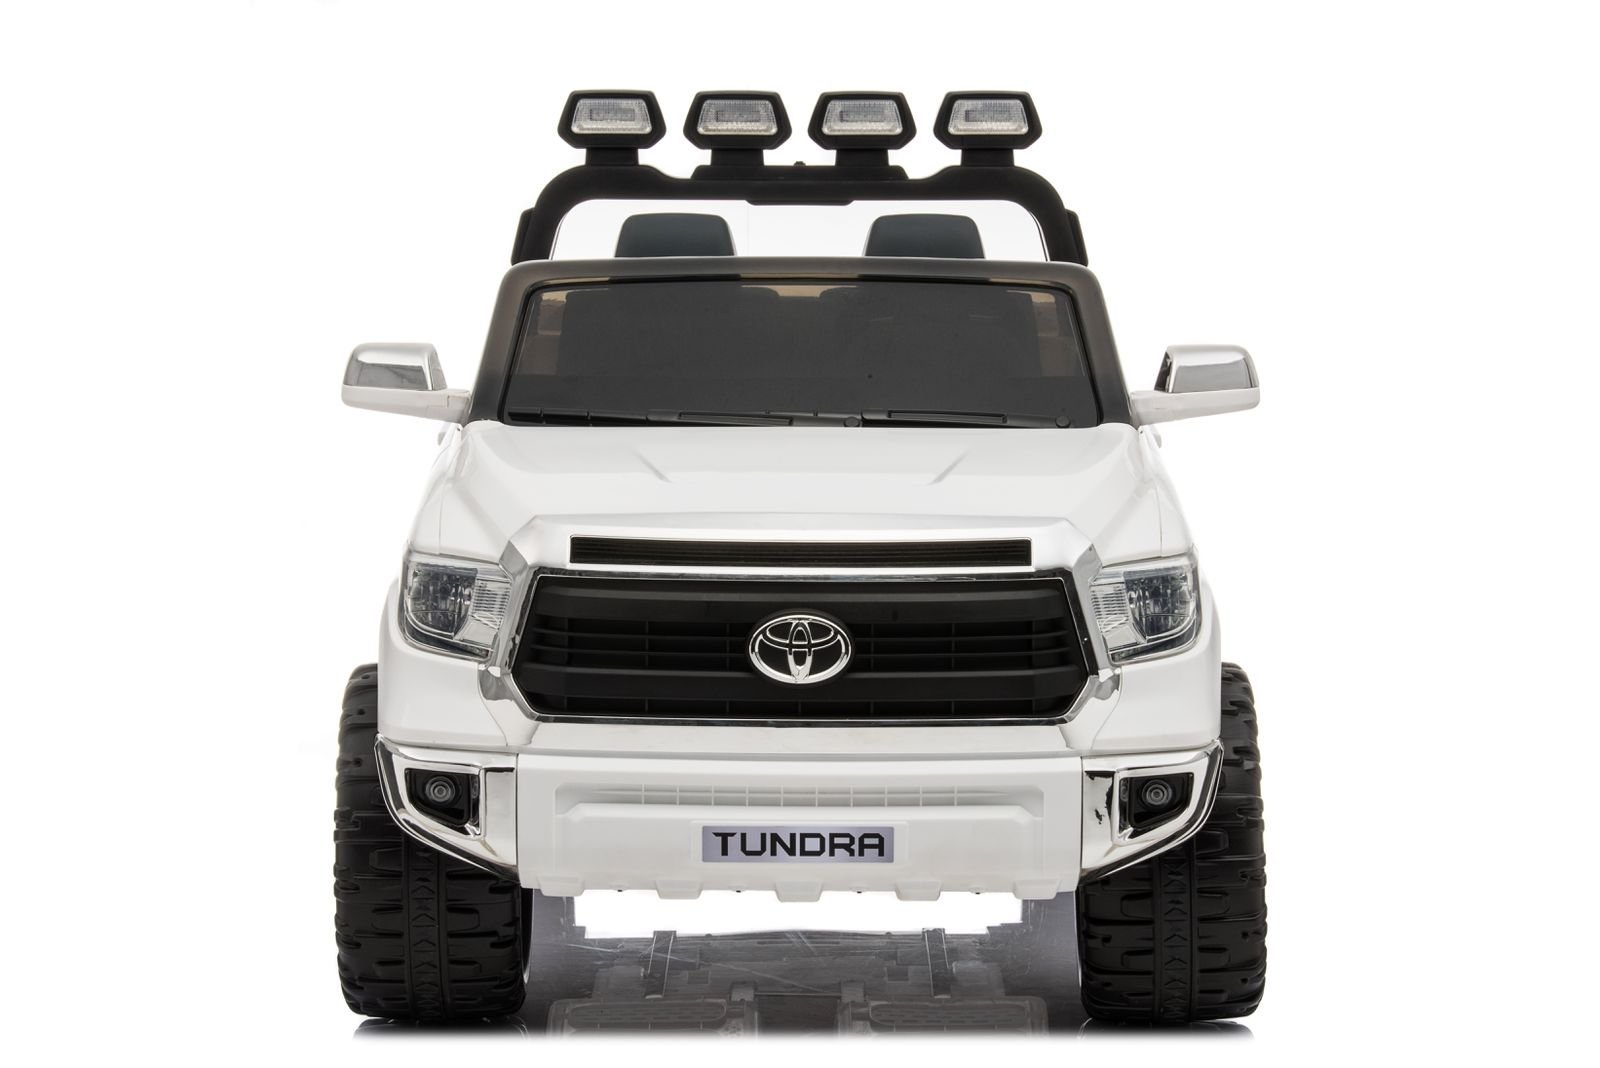 Mini Toyota Tundra Branco Carro Elétrico Infantil A Bateria Para Crianças Motorizado Meninos Meninas